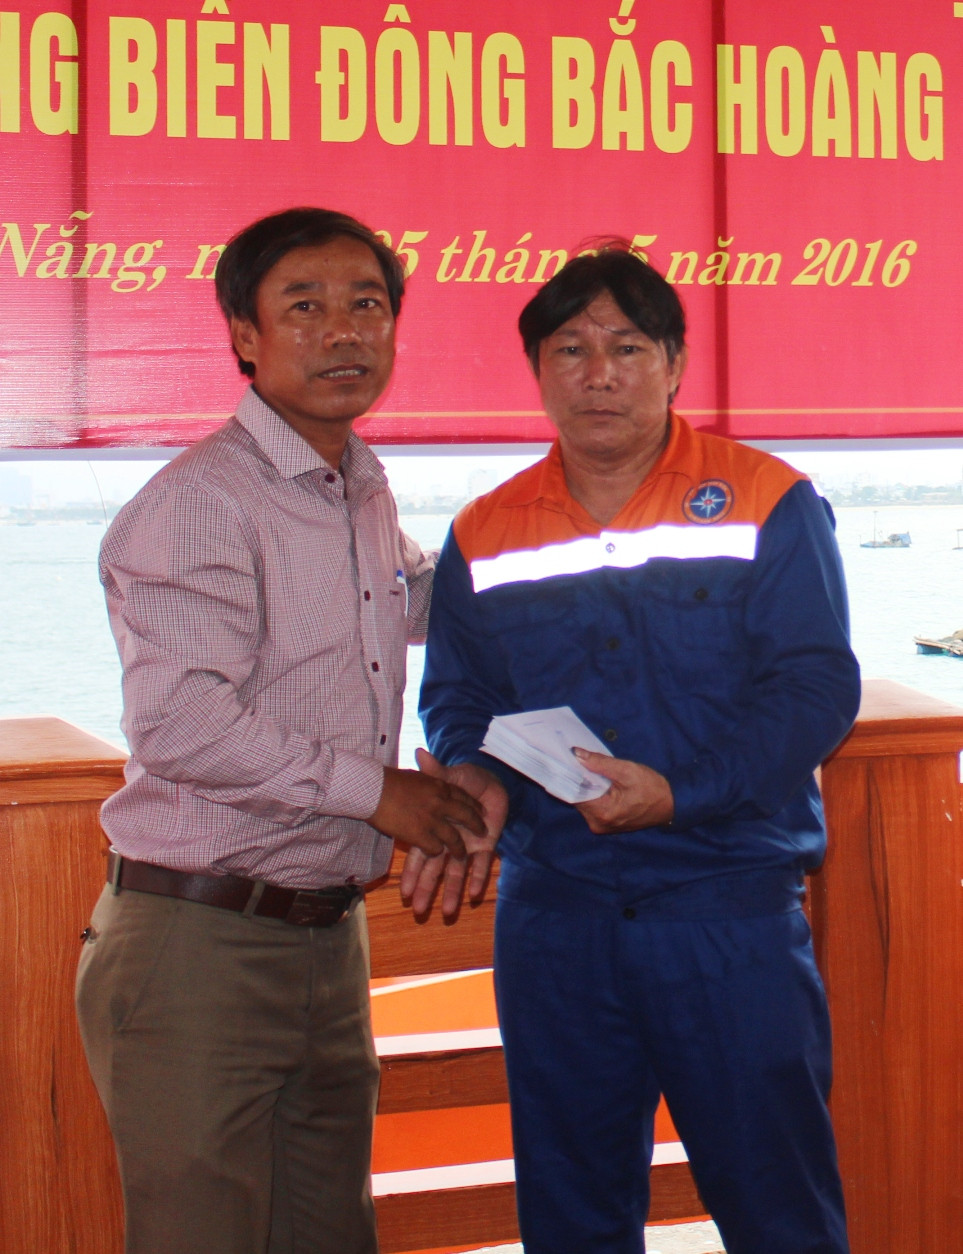 Động viên, hỗ trợ thuyền trưởng, chủ tàu Phạm Phú Thành tại lễ bàn giao ngư dân diễn ra tại Đà Nẵng chiều ngày 5.5. Ảnh: T.H